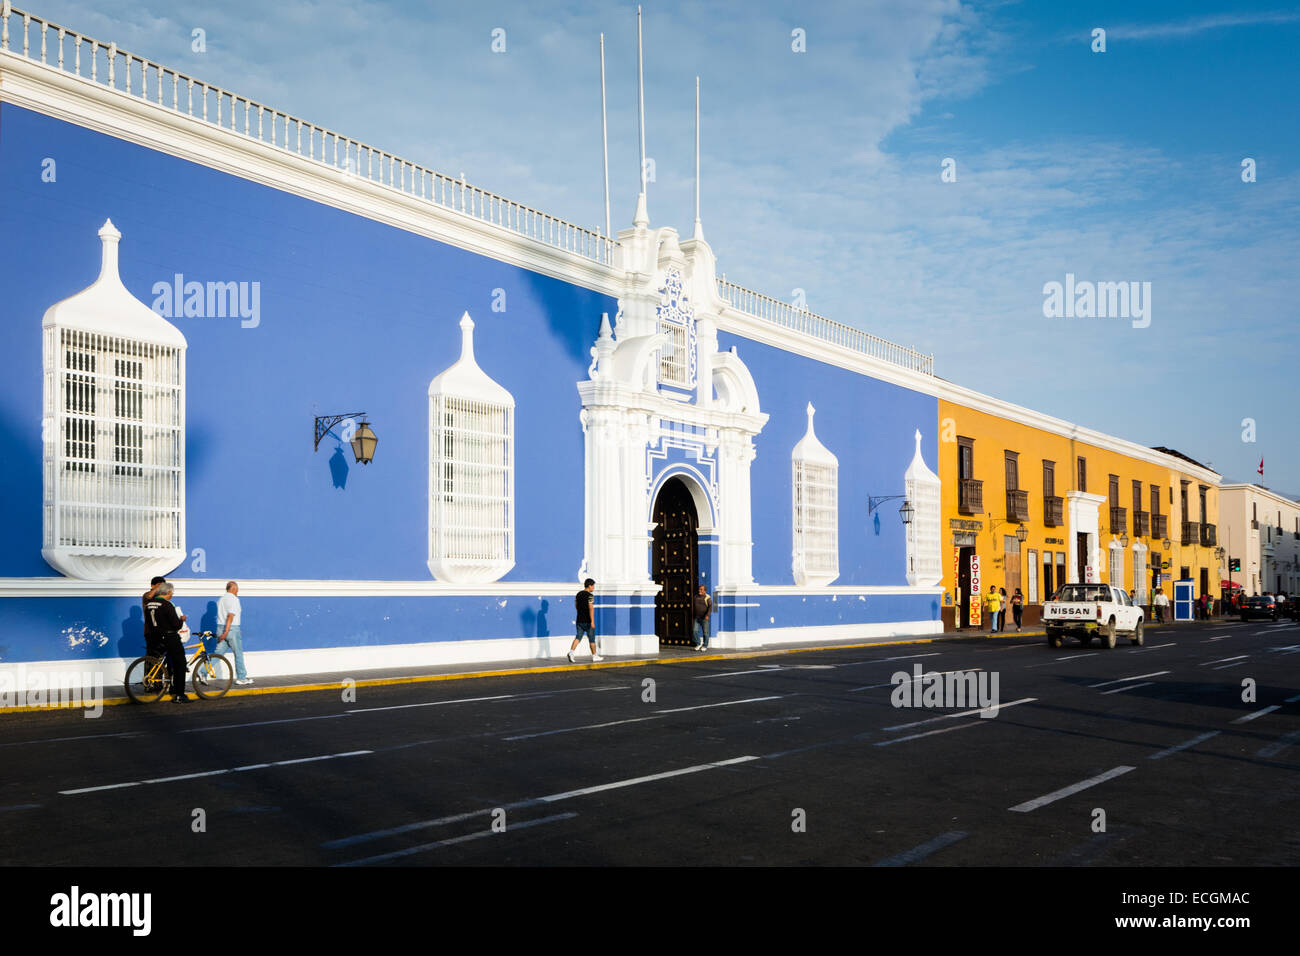 Bâtiments de style colonial dans le centre historique de Trujillo, Pérou Banque D'Images